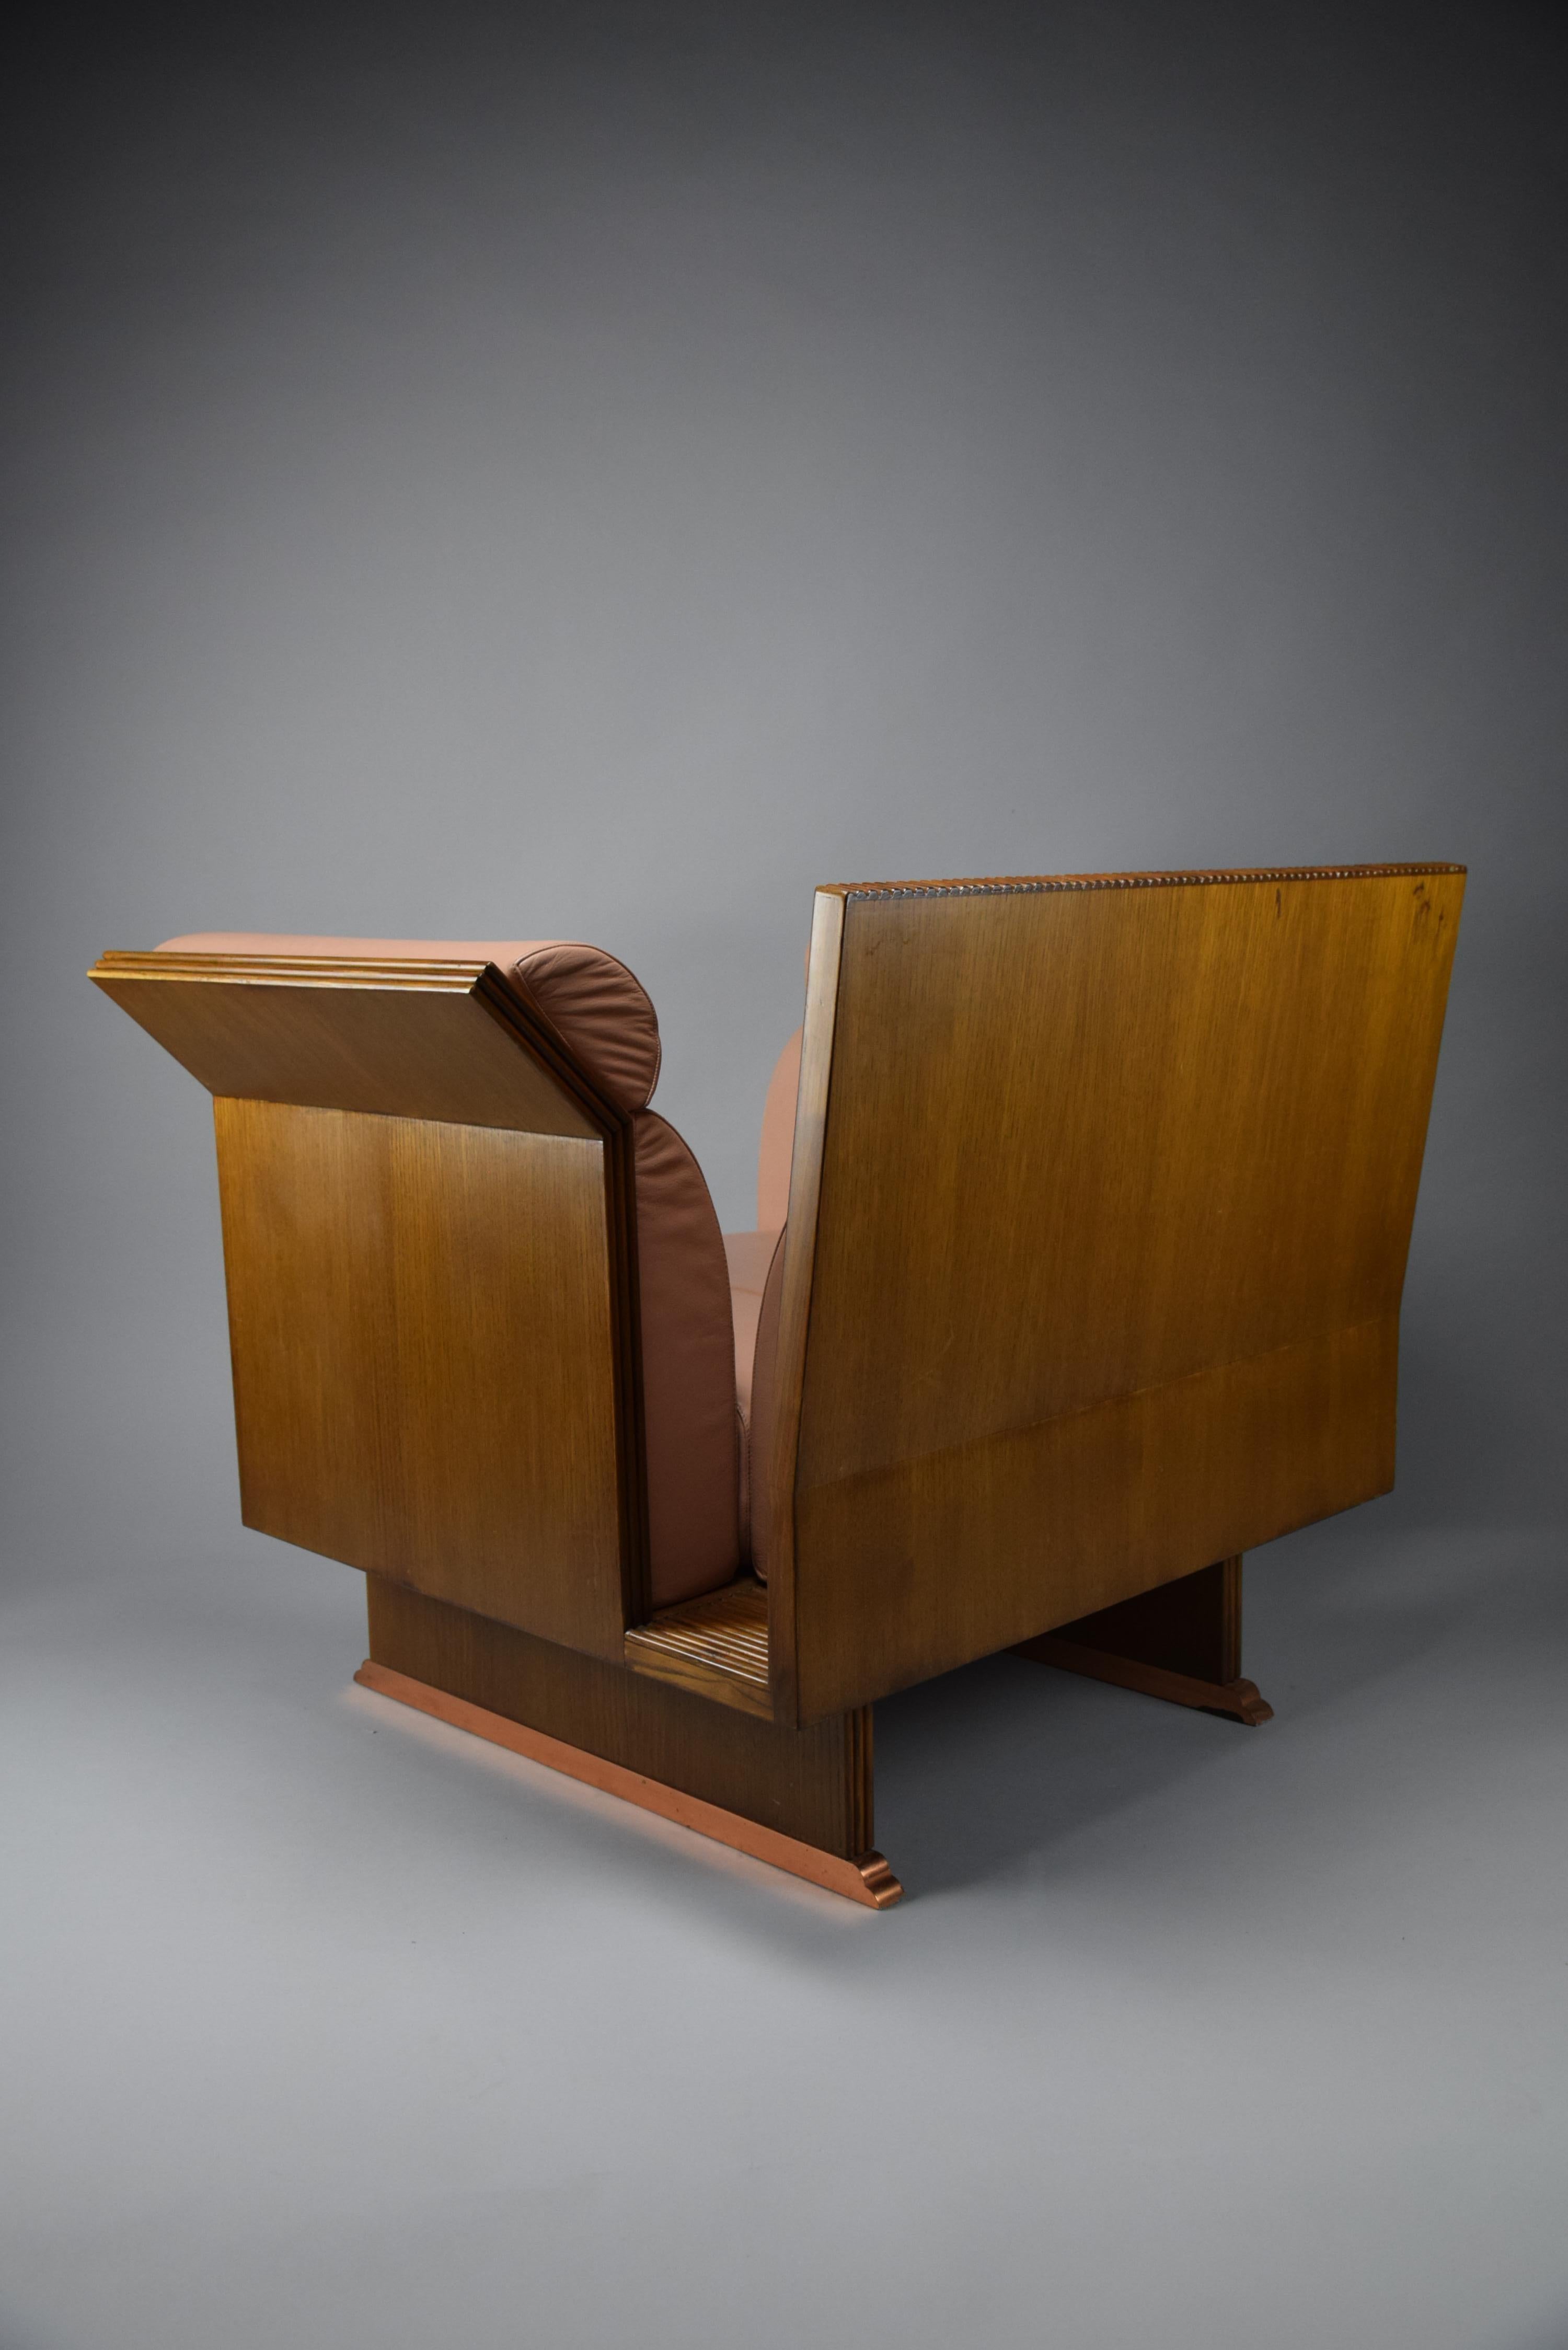 Voici un superbe fauteuil Pretenziosa conçu par Ugo La Pietra en 1983 pour Busnelli Italie. Cette chaise néo-éclectique post-moderne est l'incarnation même de l'élégance et de la sophistication, avec sa structure en bois de Jatoba aux lignes épurées